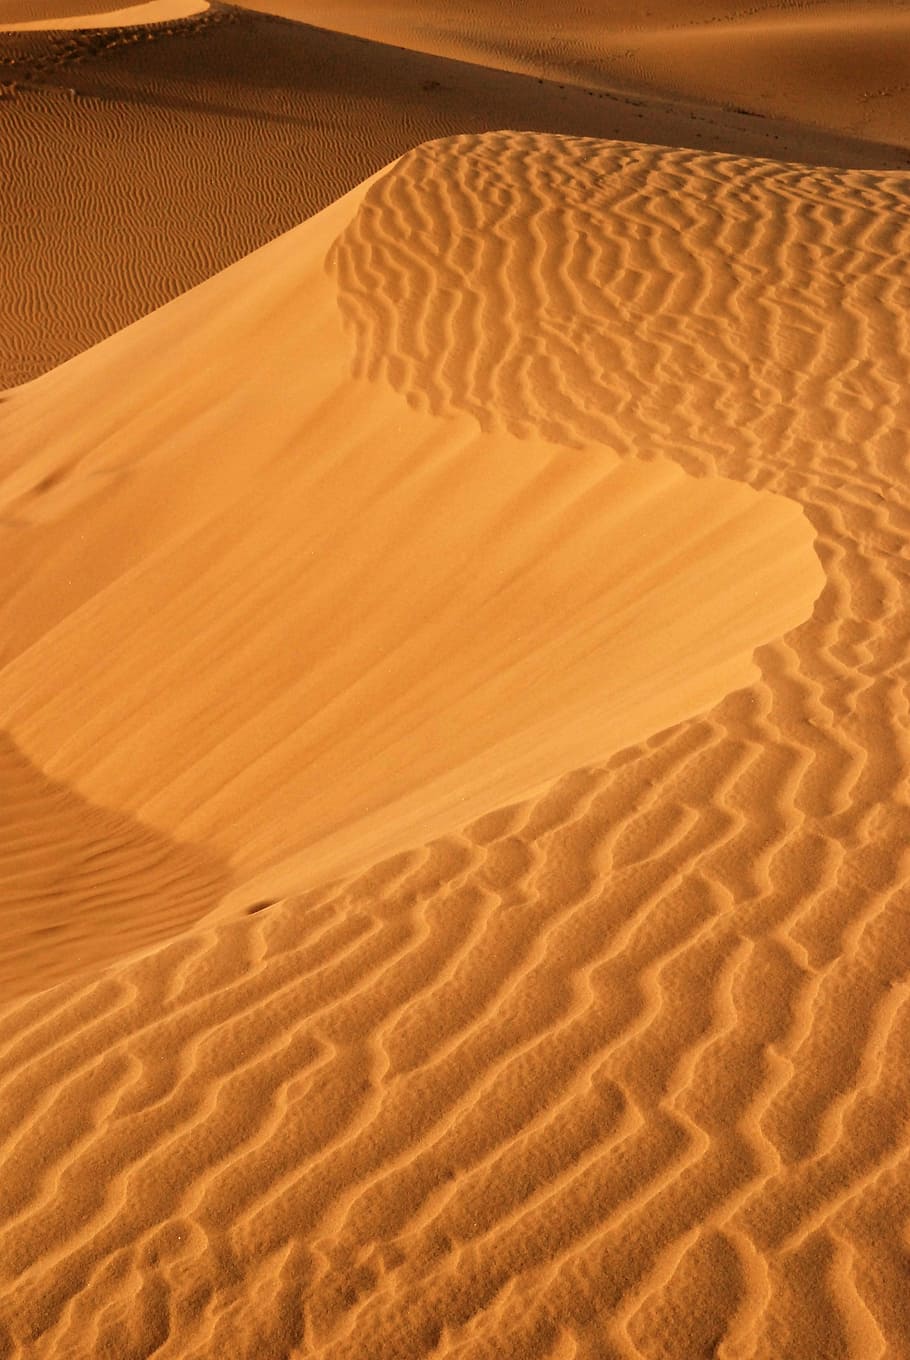 arena dorada, dunas de arena, desierto, arena, duna de arena, tierra, paisaje, paisajes: naturaleza, clima, clima árido